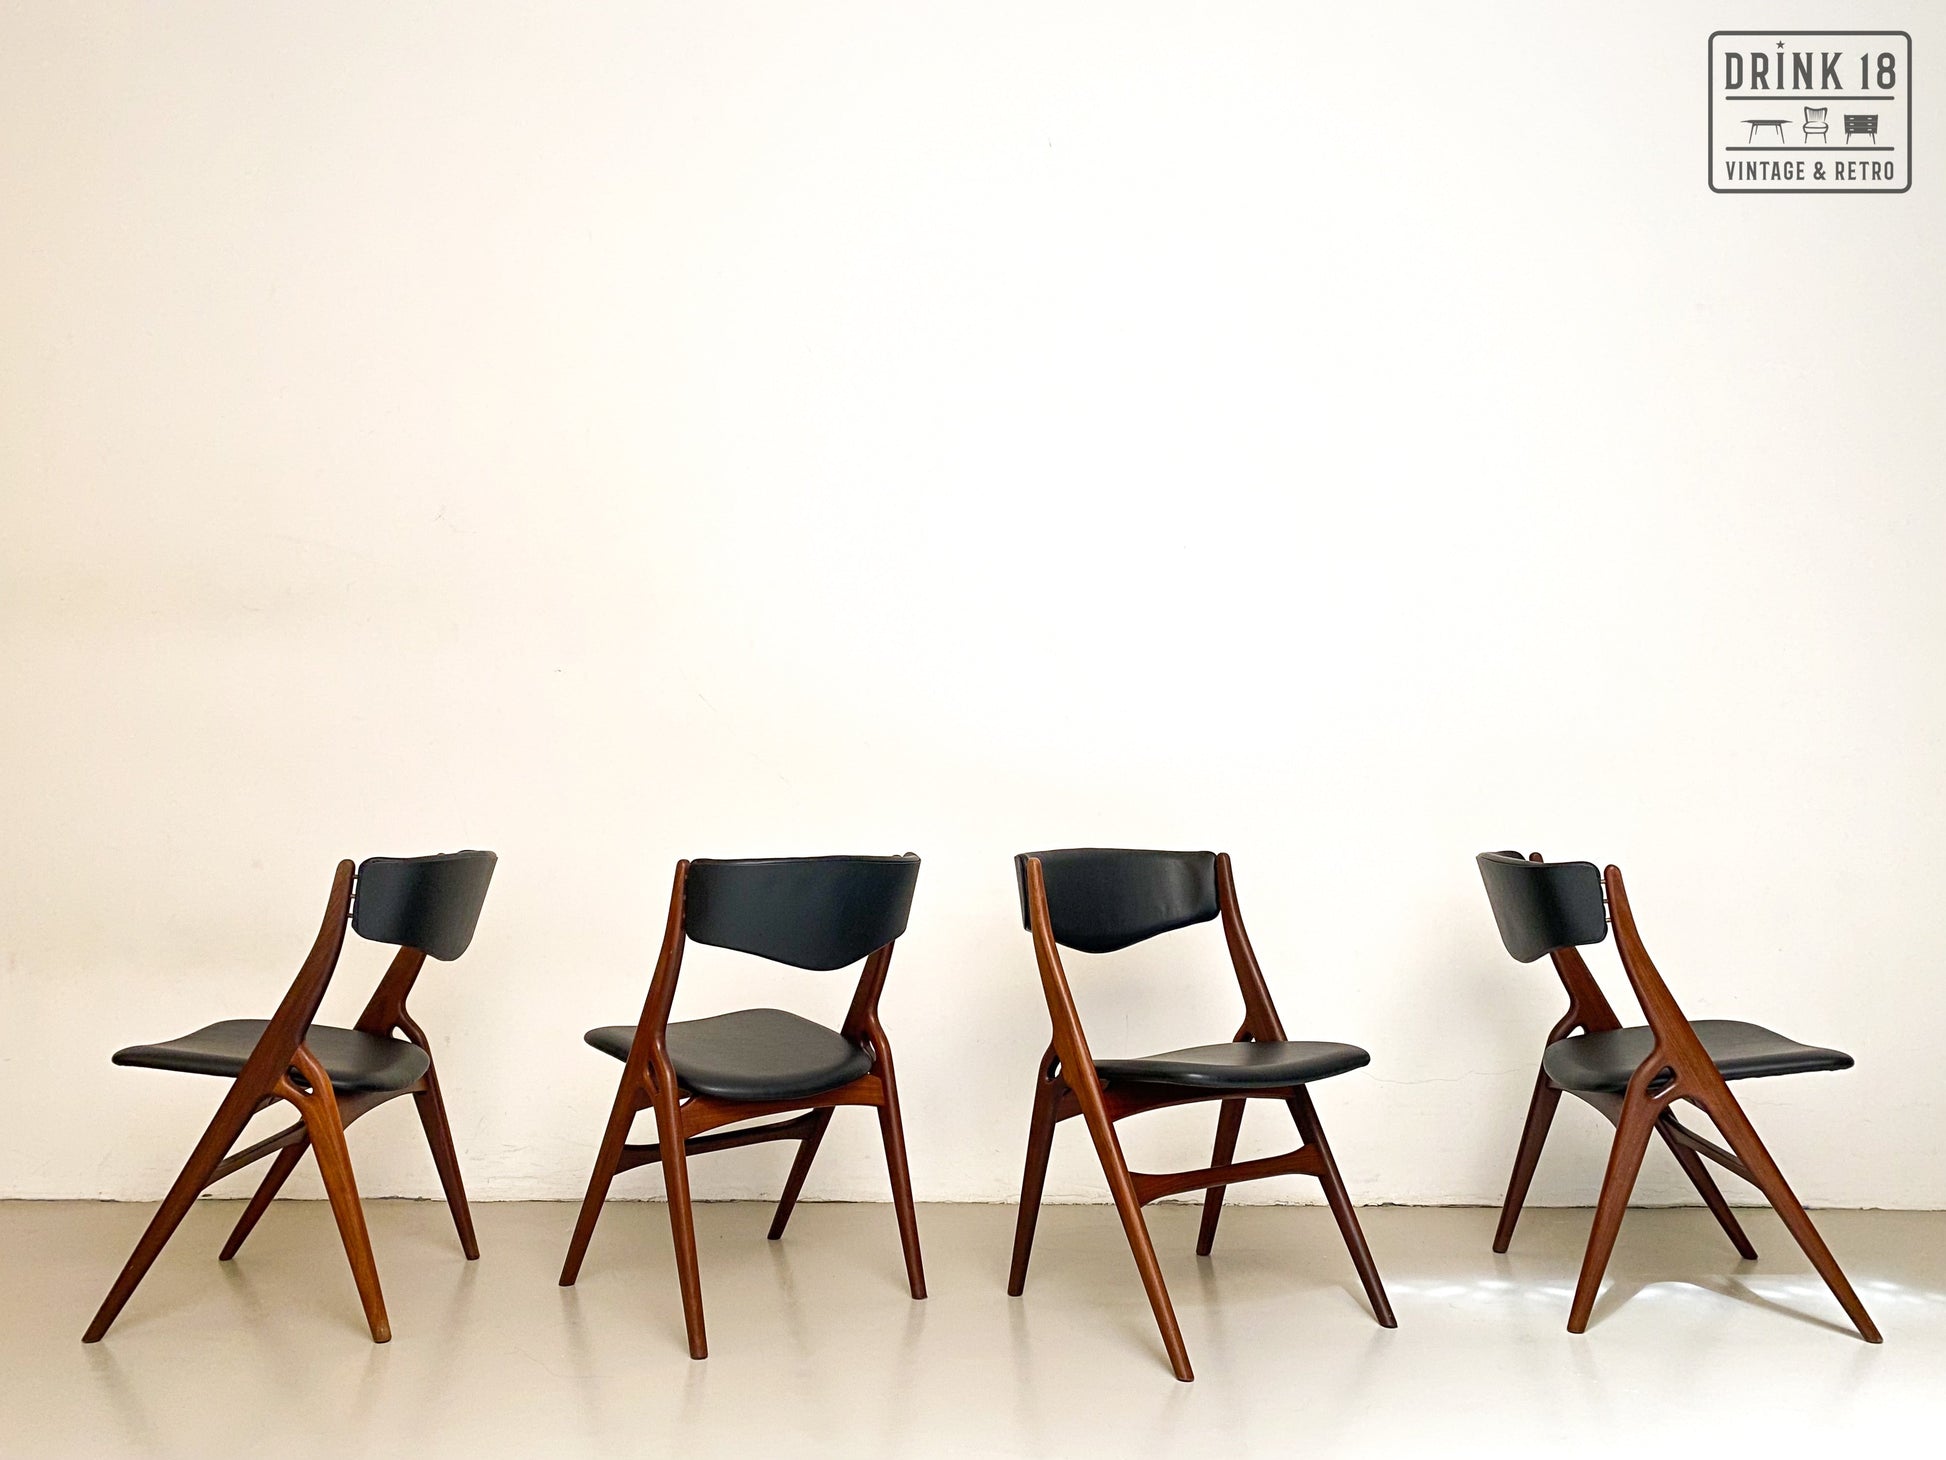 Fantastisch aanvaardbaar Kind Vier vintage Aska stoelen - Louis van Teeffelen – Drink 18